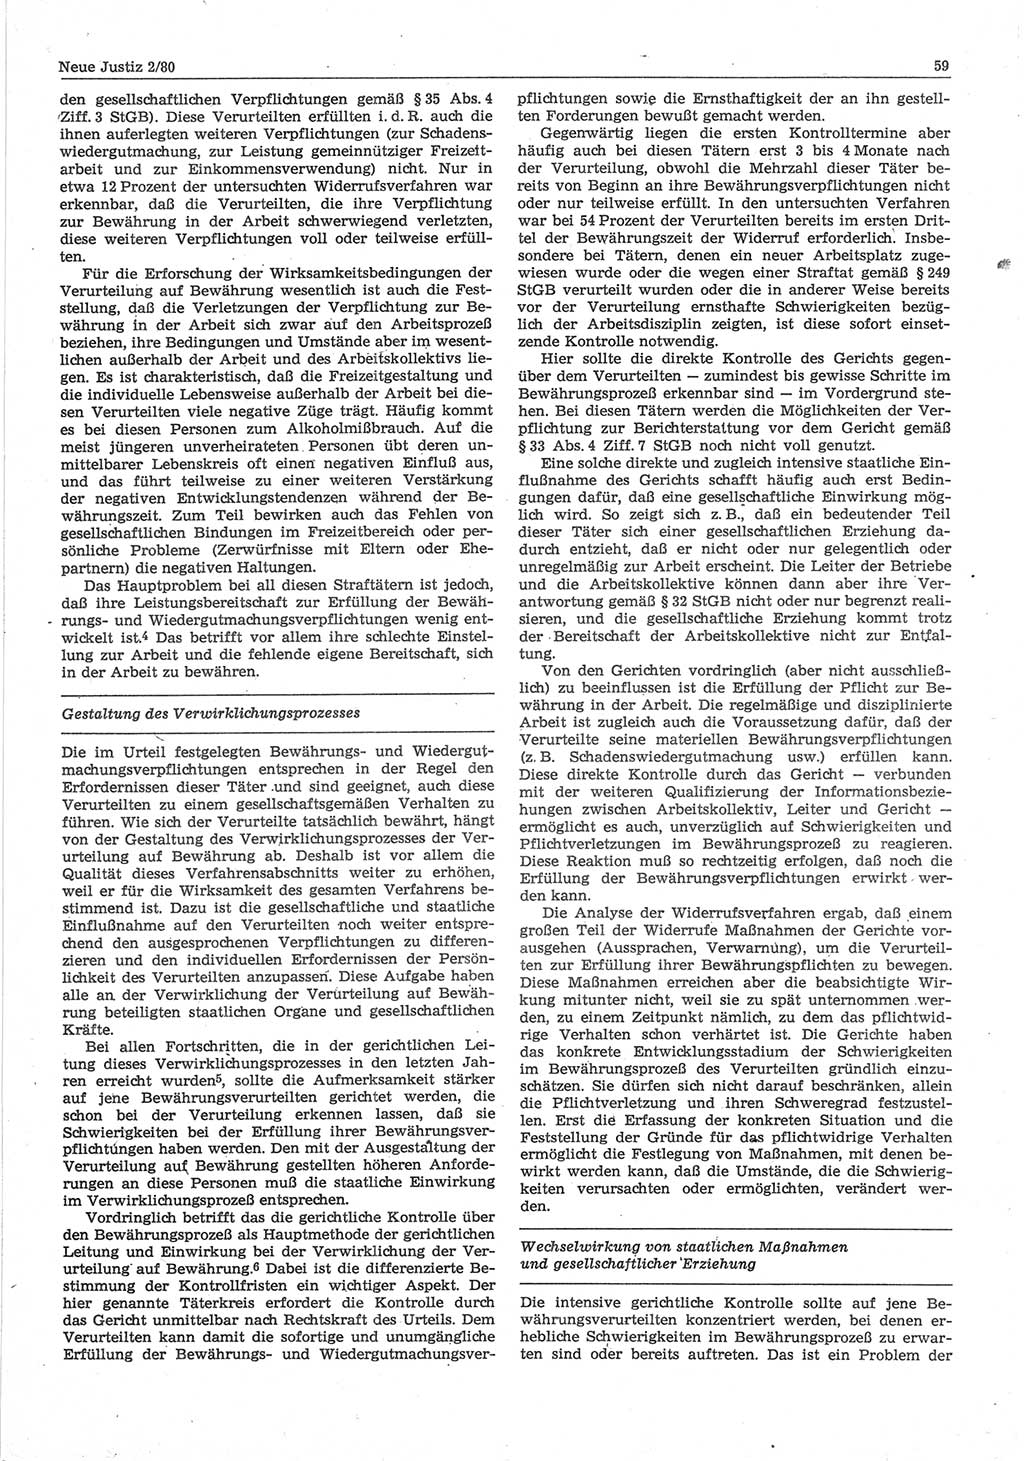 Neue Justiz (NJ), Zeitschrift für sozialistisches Recht und Gesetzlichkeit [Deutsche Demokratische Republik (DDR)], 34. Jahrgang 1980, Seite 59 (NJ DDR 1980, S. 59)